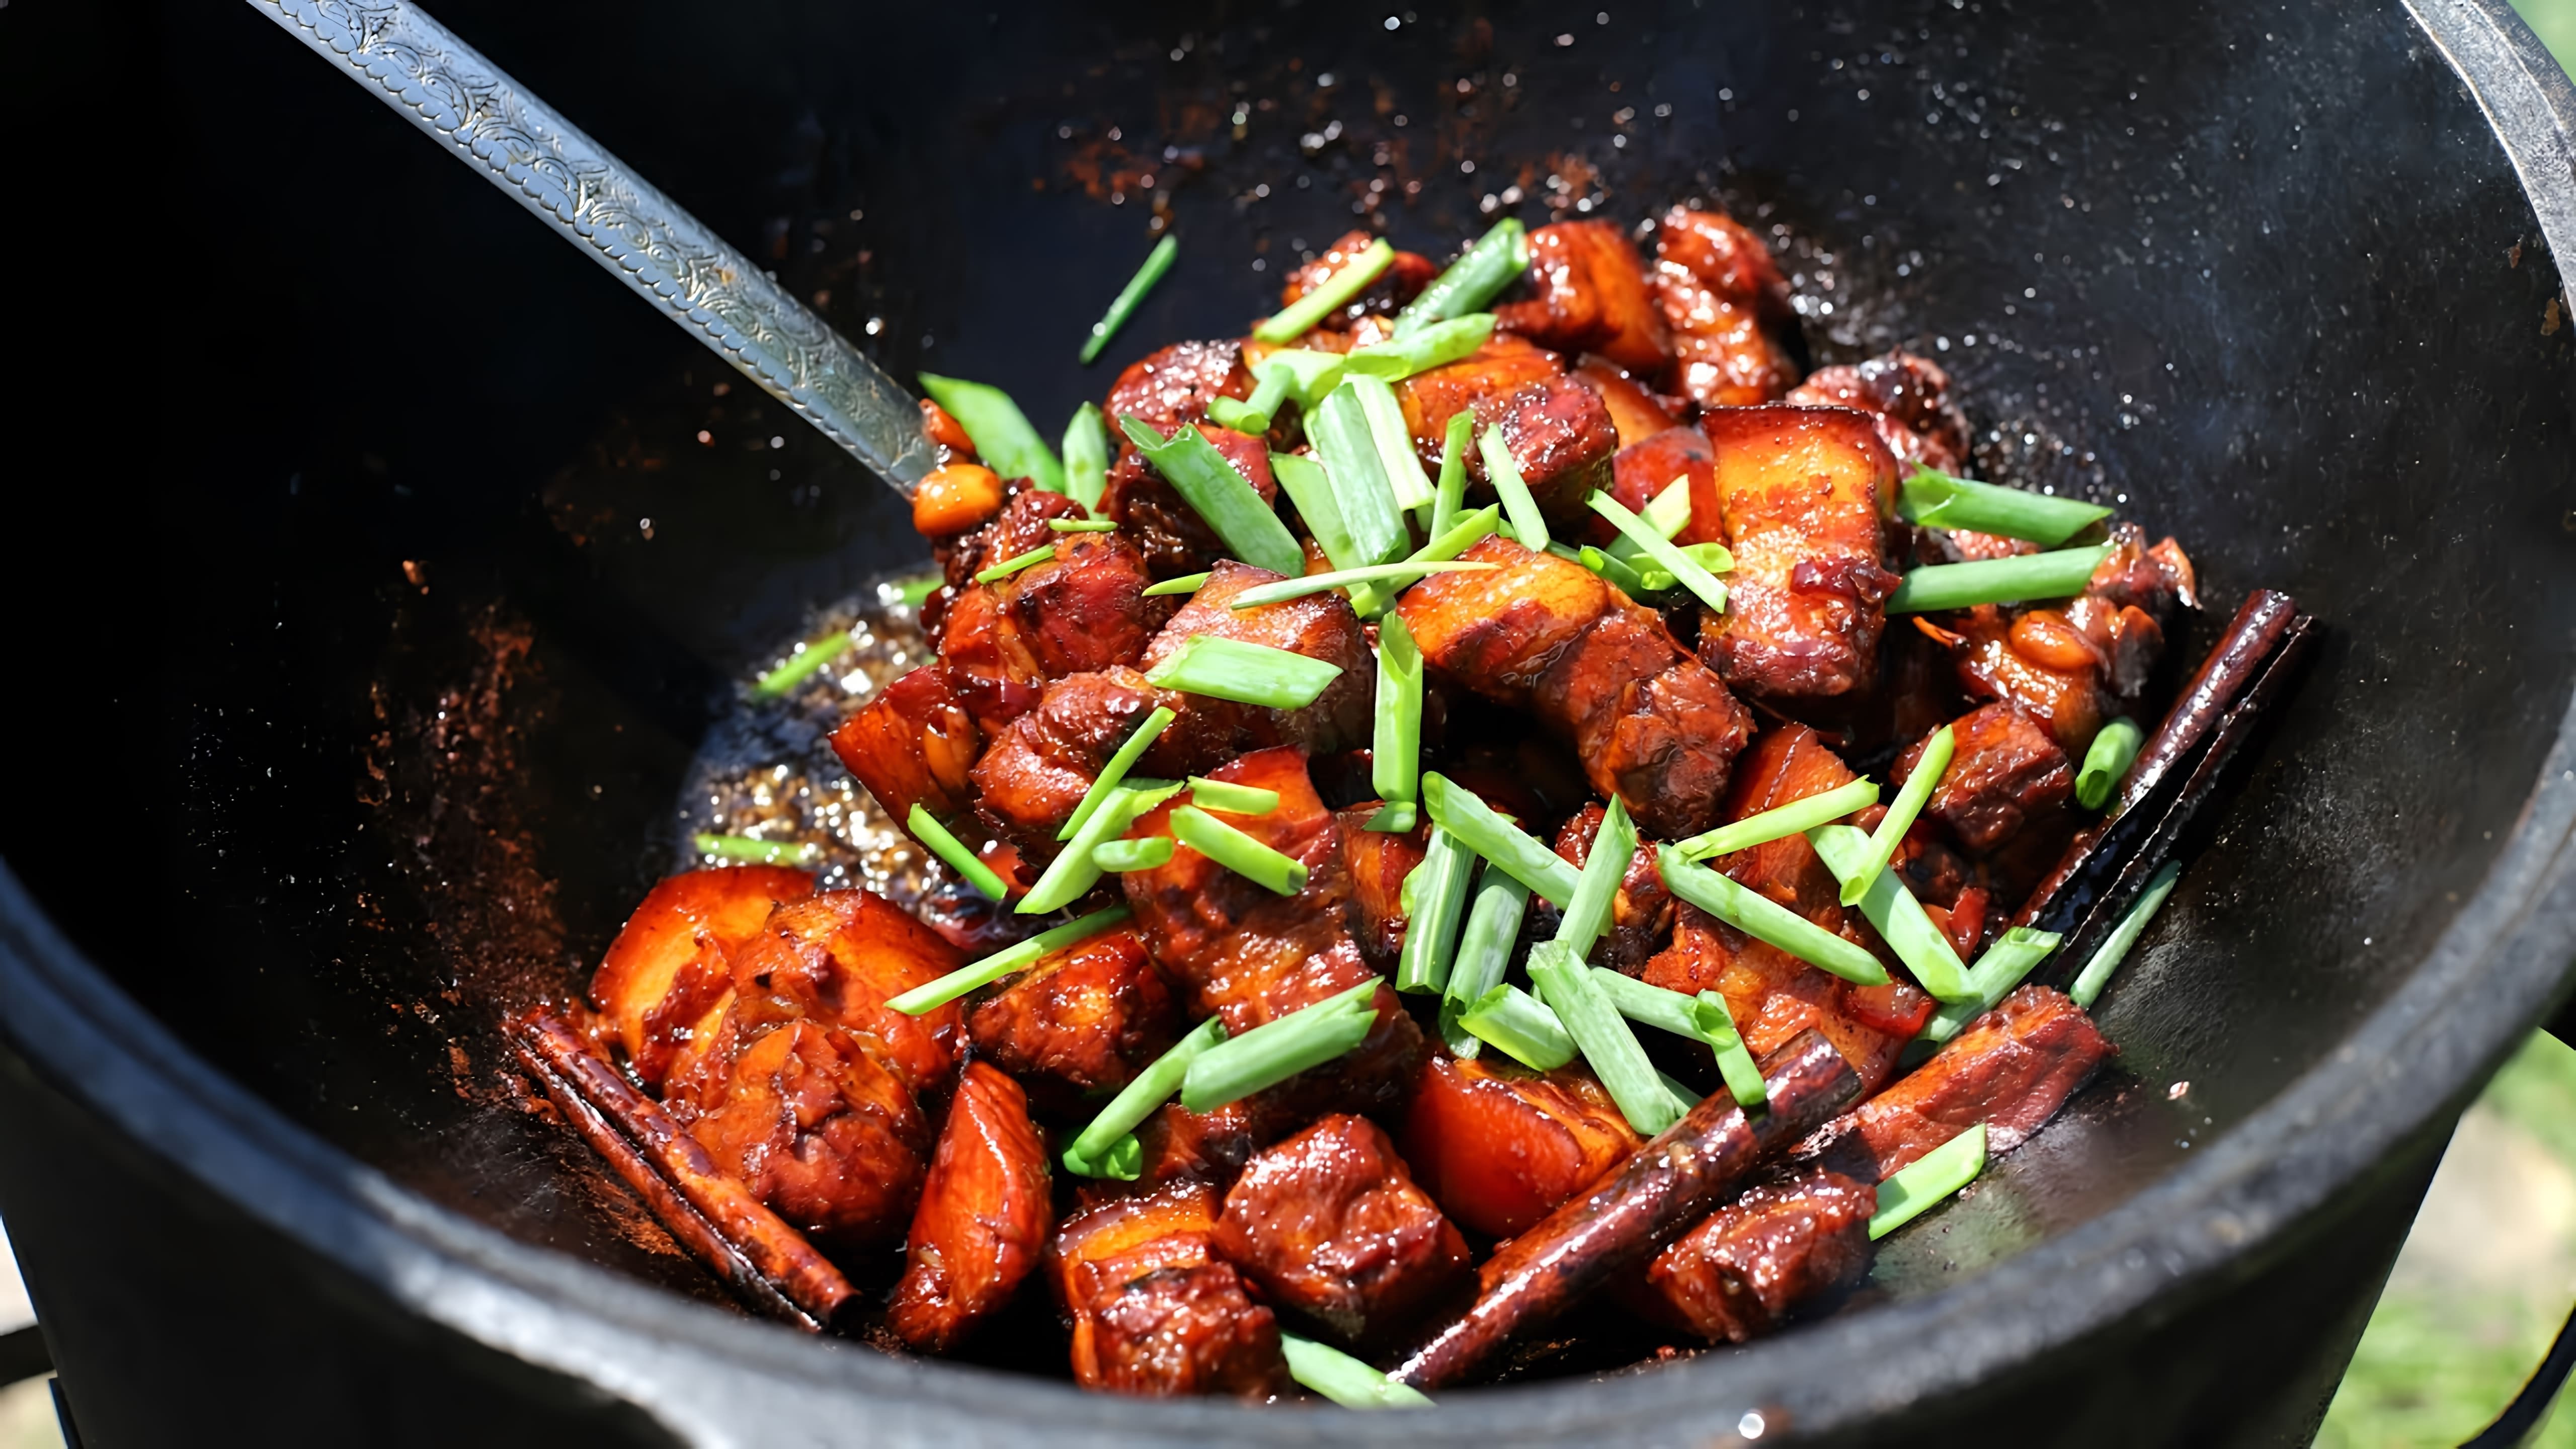 В этом видео демонстрируется рецепт красной свинины по-китайски, приготовленной в казане на костре